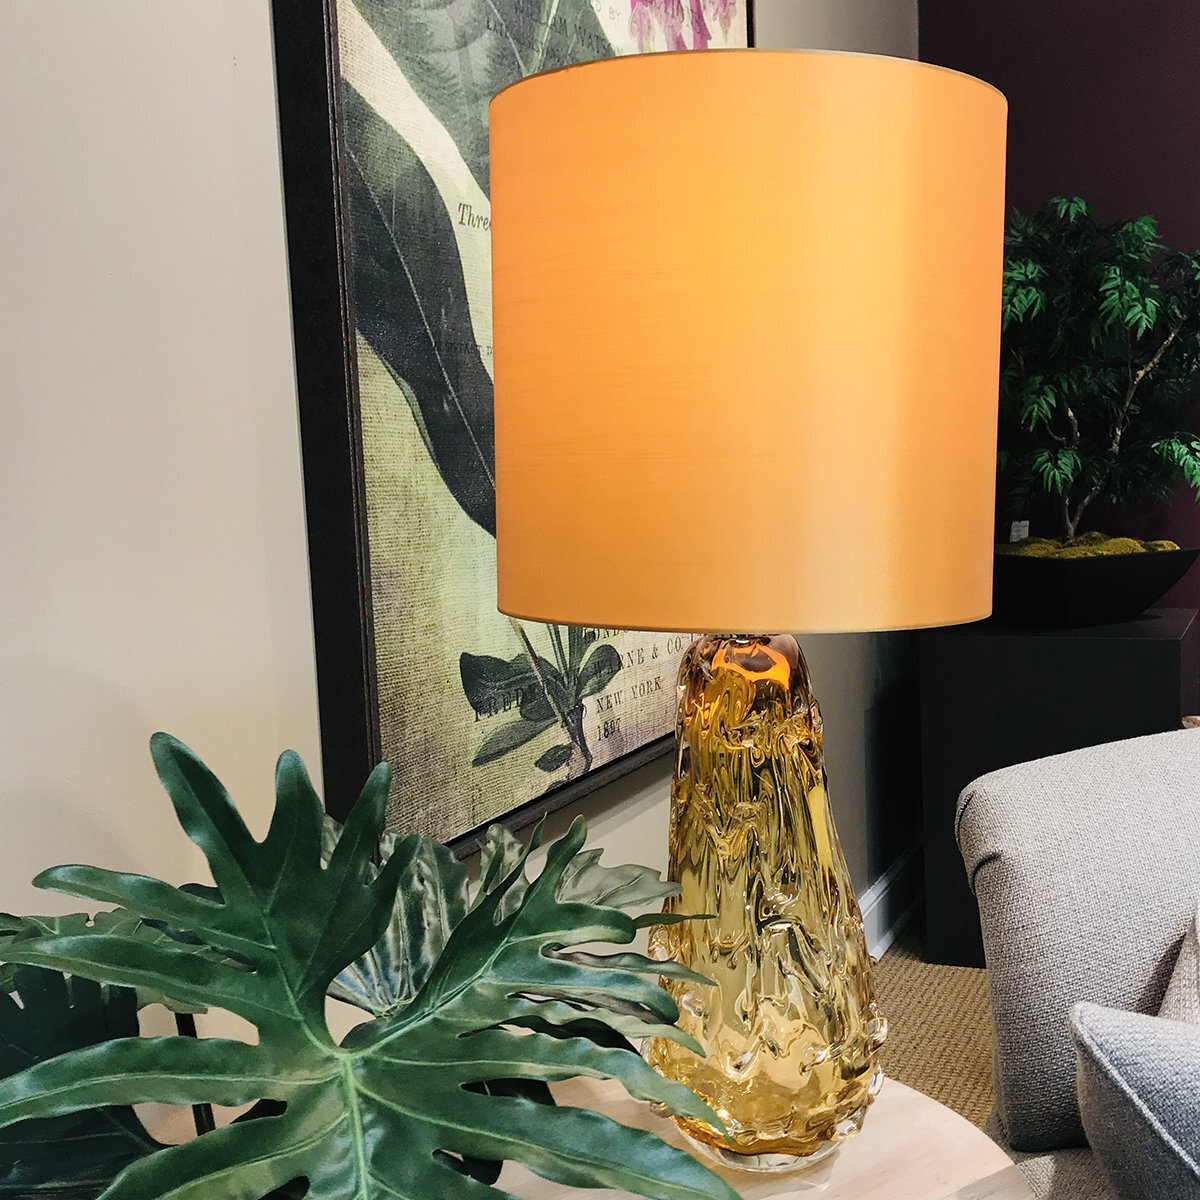 Unique orange glass lamp